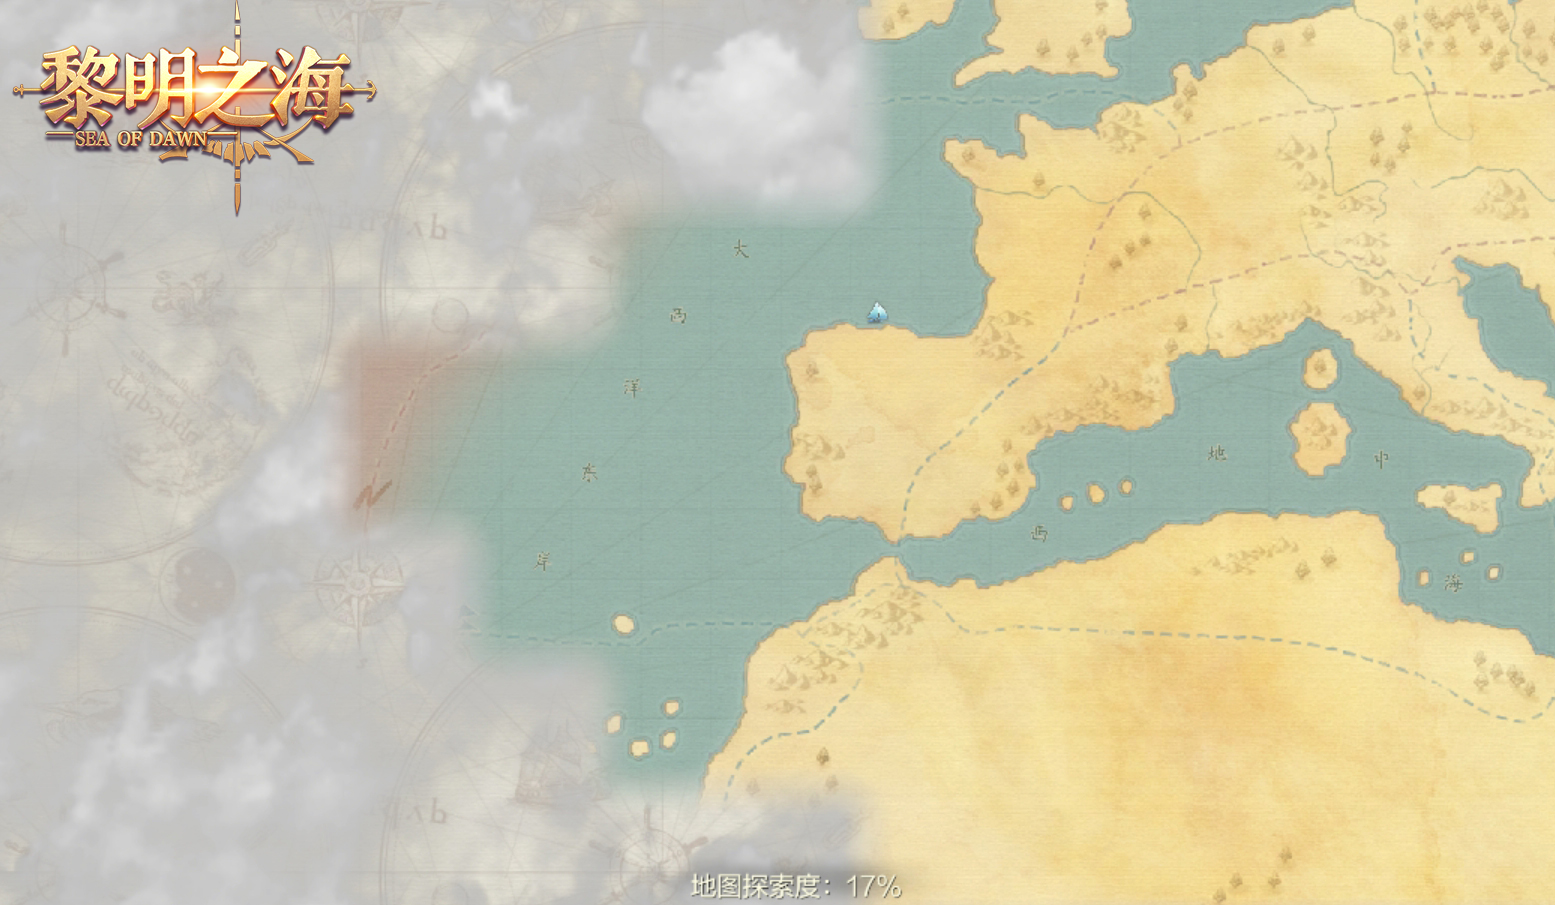 航海冒险MMORPG手游《黎明之海》今日官网上线 公测预约全面开启